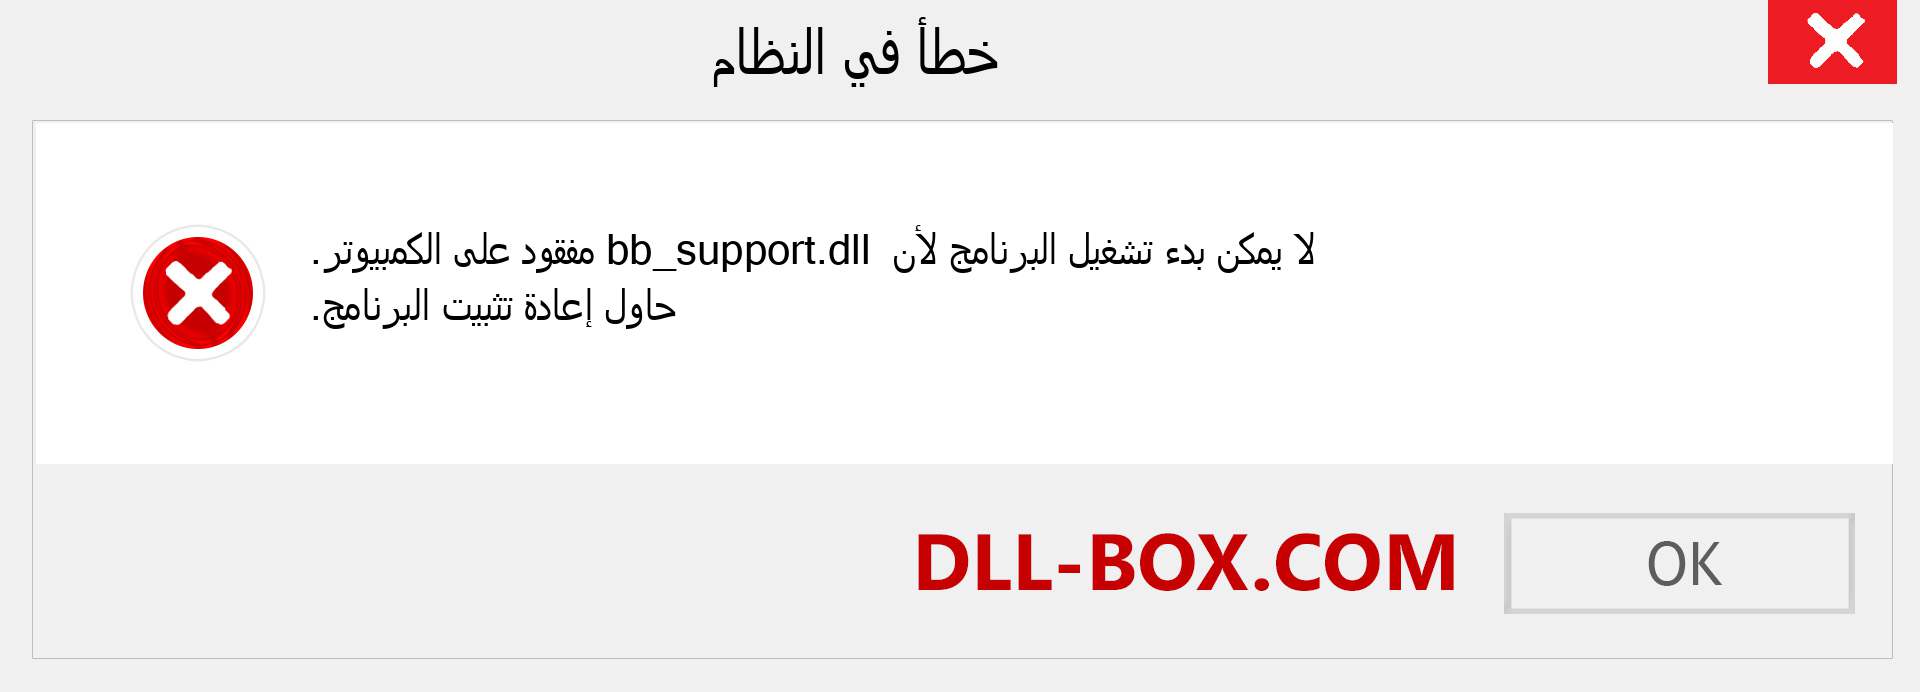 ملف bb_support.dll مفقود ؟. التنزيل لنظام التشغيل Windows 7 و 8 و 10 - إصلاح خطأ bb_support dll المفقود على Windows والصور والصور